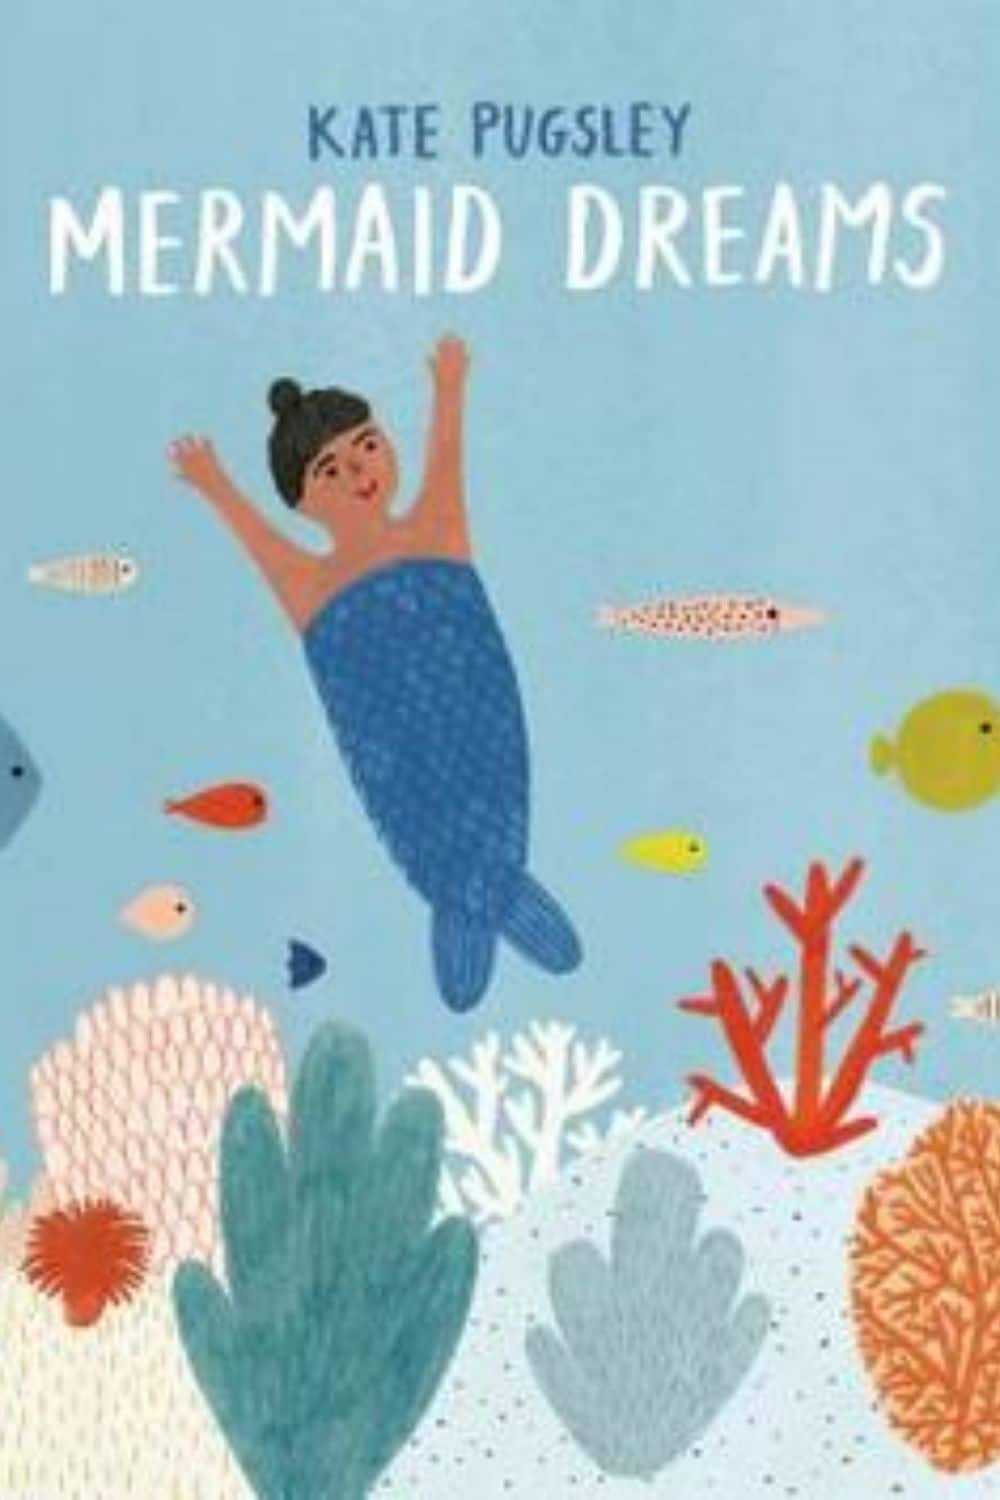 Mermaids Story Books (केट पग्सले द्वारा मरमेड ड्रीम्स)